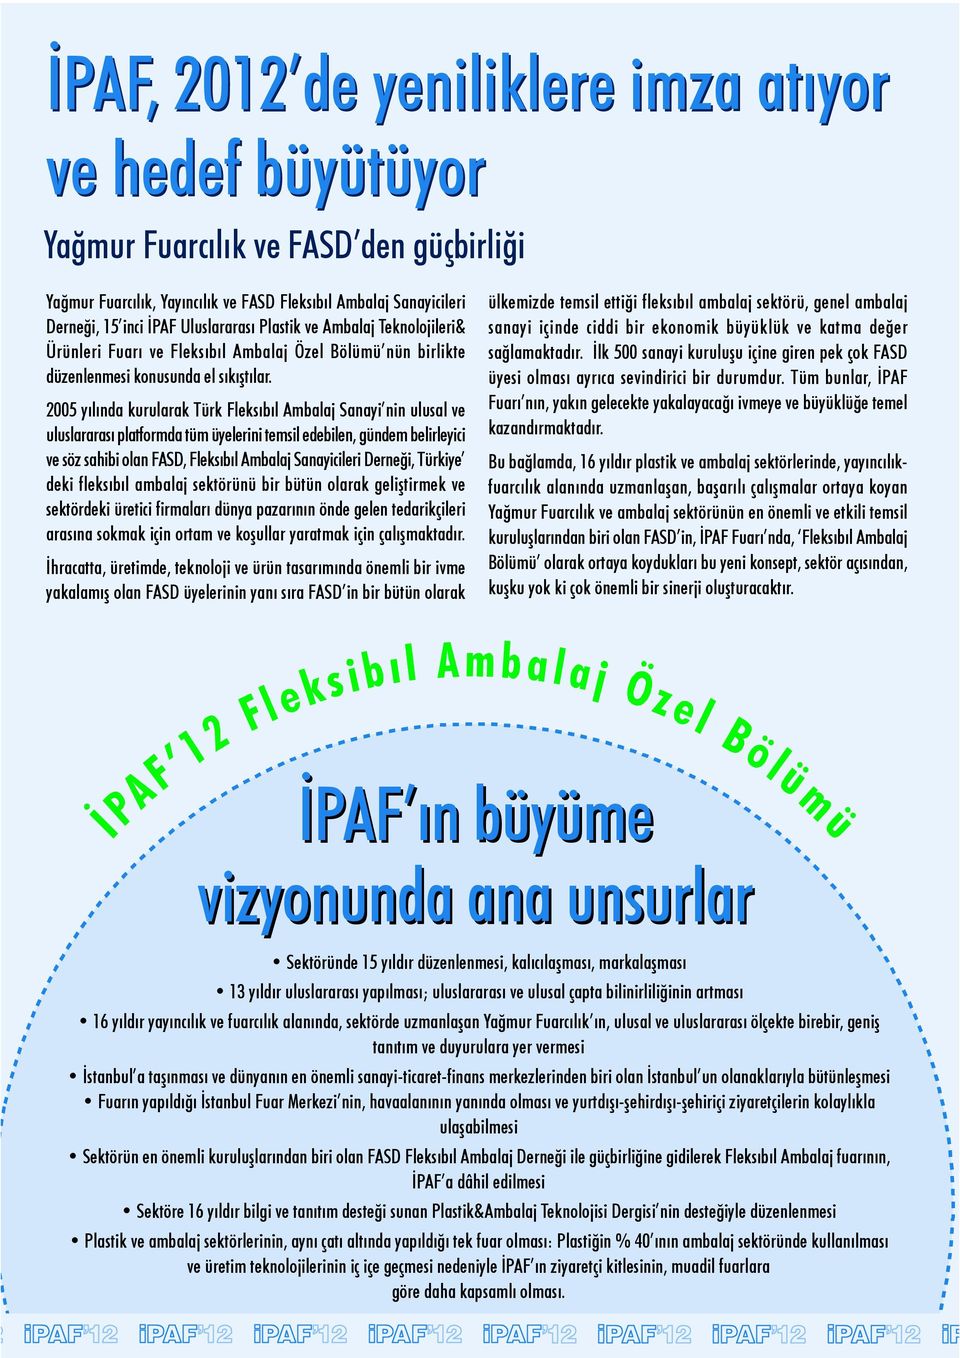 2005 yılında kurularak Türk Fleksıbıl Ambalaj Sanayi nin ulusal ve uluslararası platformda tüm üyelerini temsil edebilen, gündem belirleyici ve söz sahibi olan FASD, Fleksıbıl Ambalaj Sanayicileri